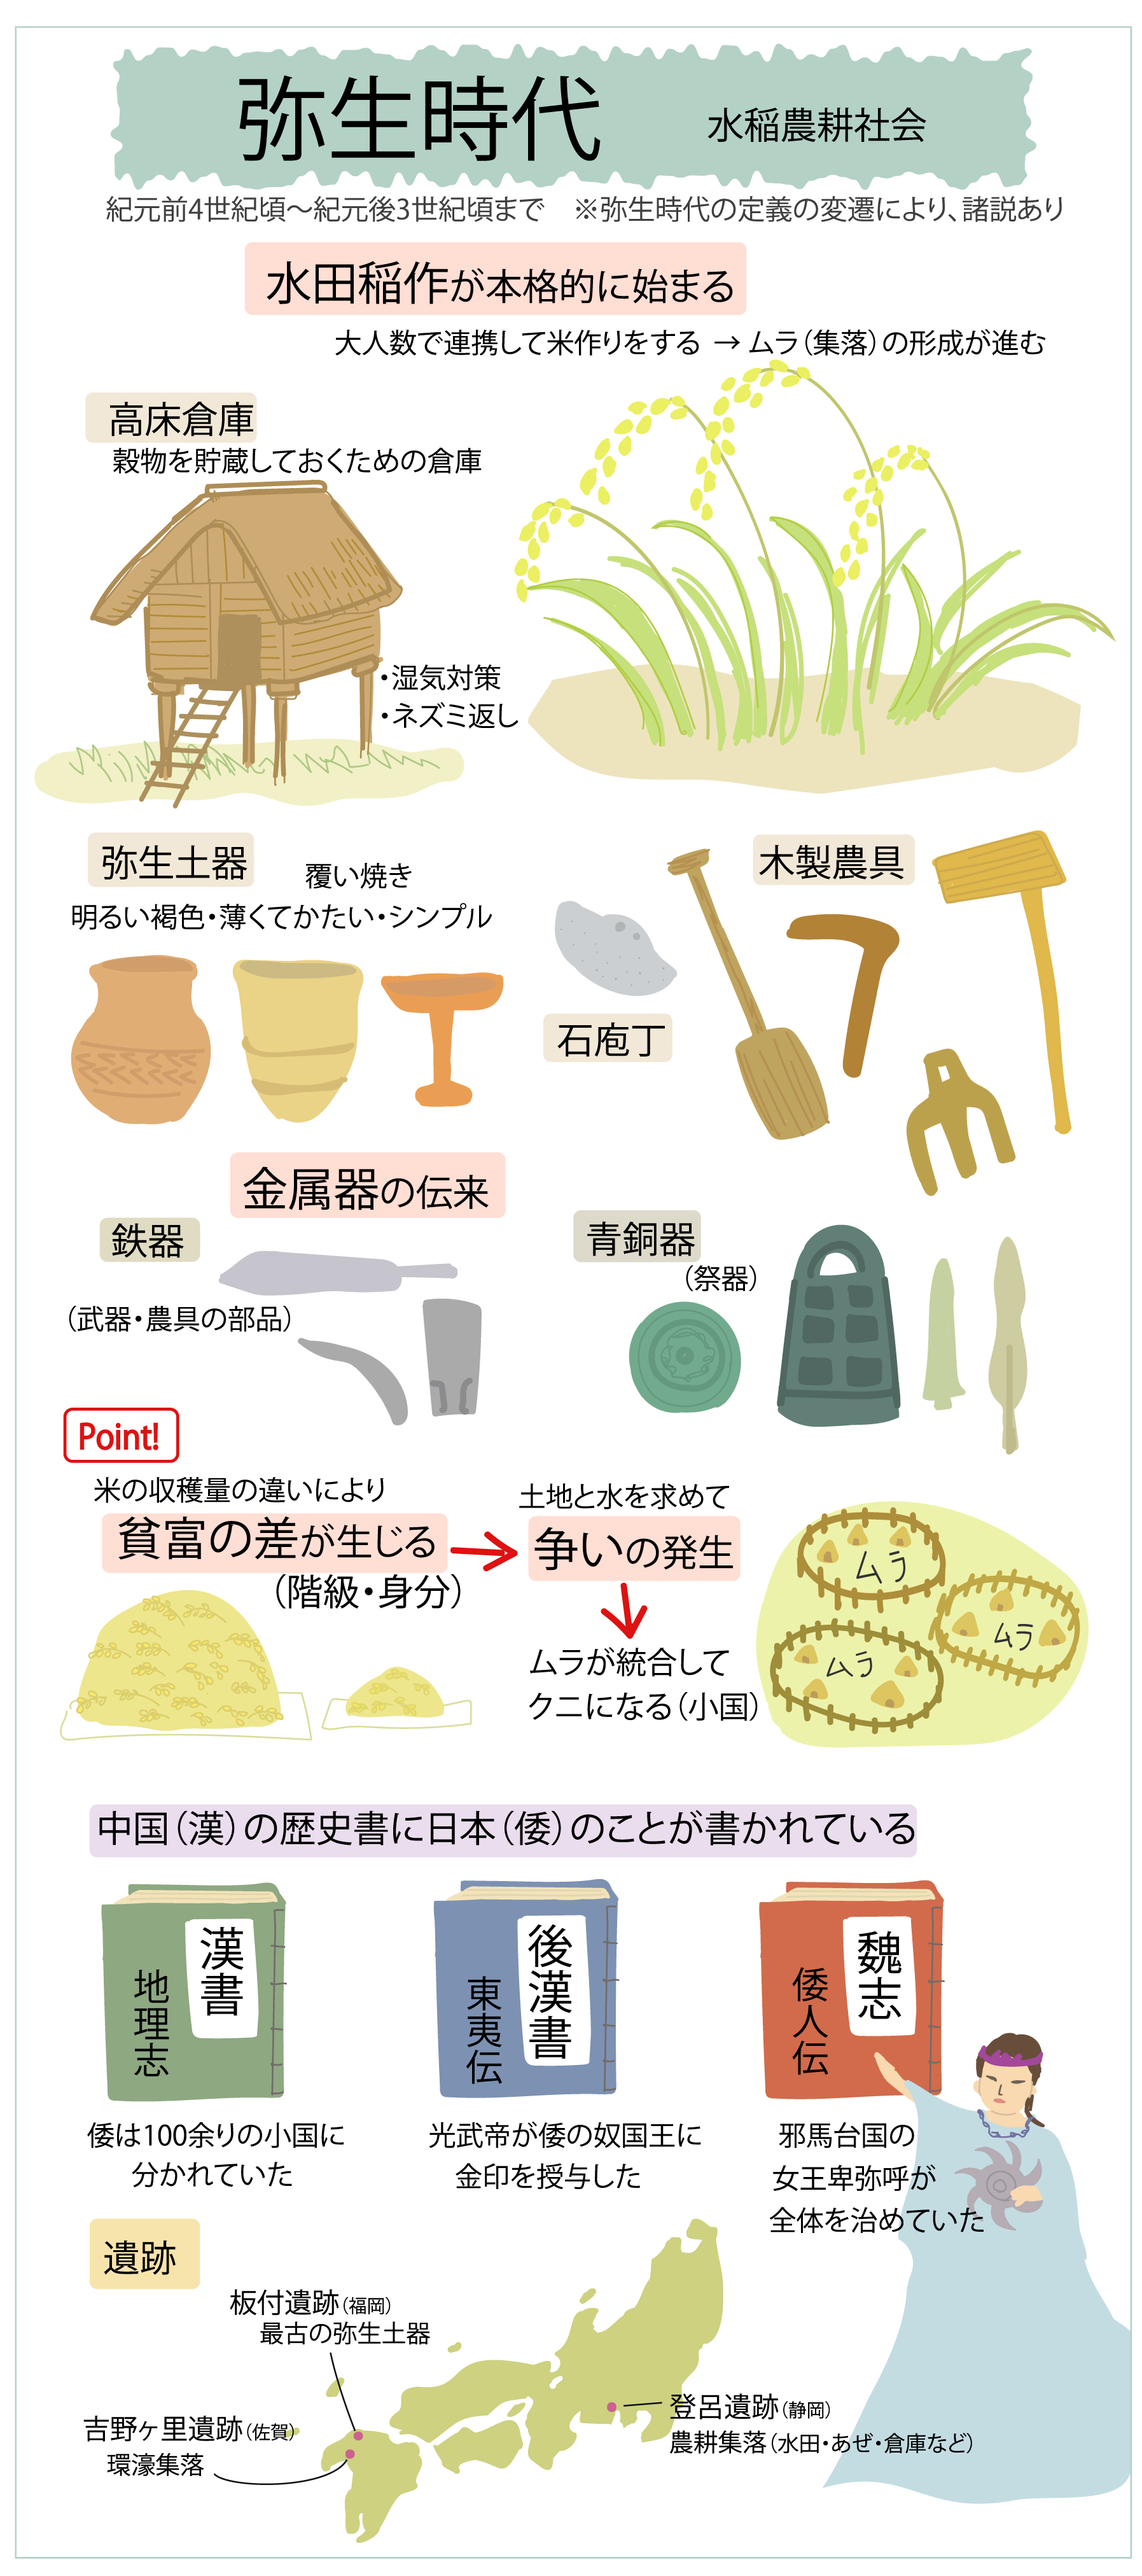 弥生時代 水稲農耕社会をイラストで解説_図解で学ぶ日本史